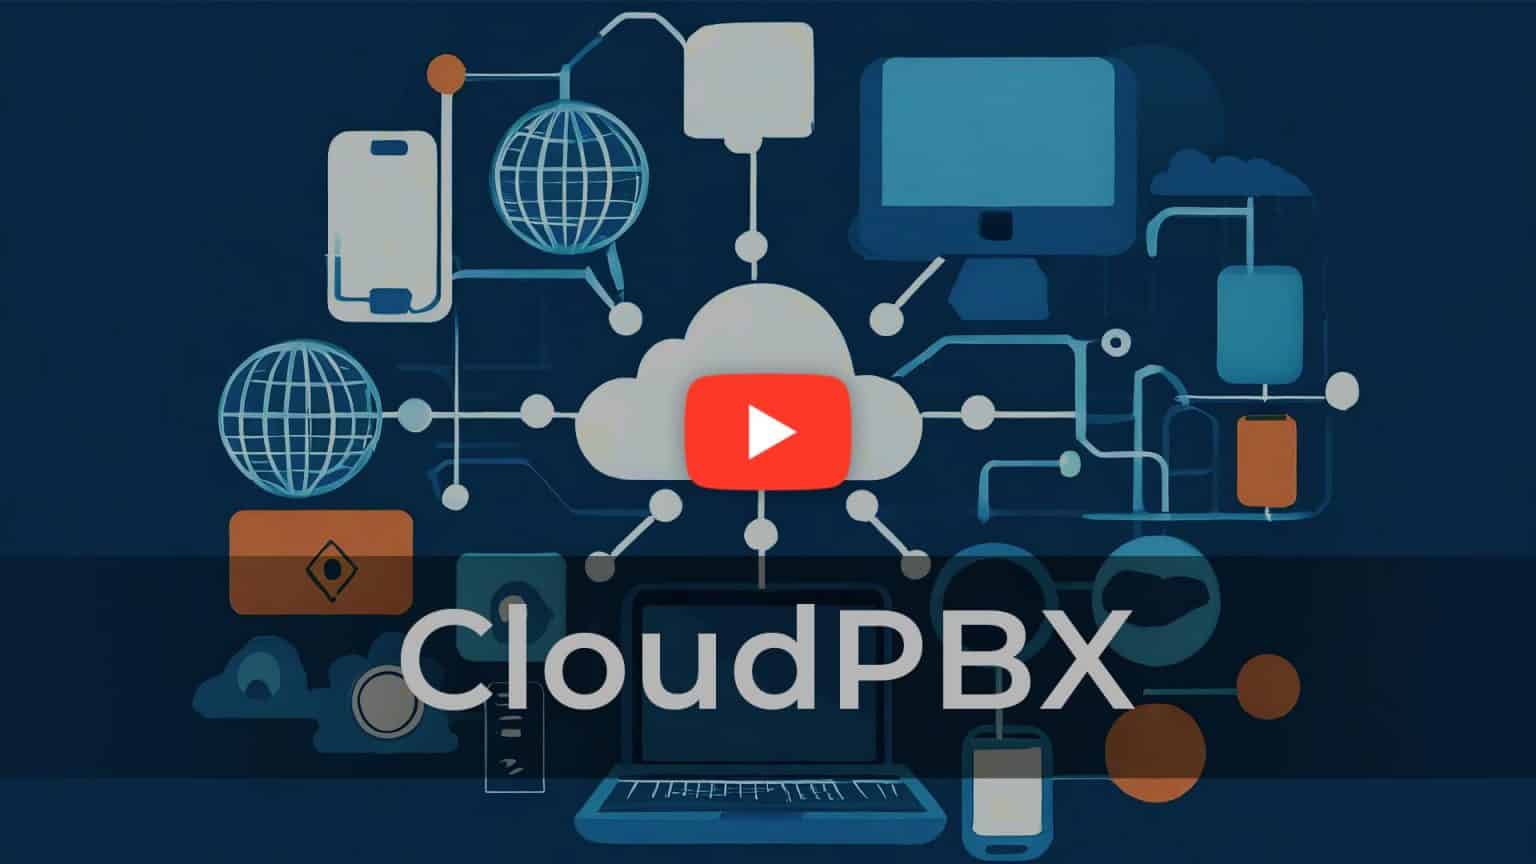 CloudPBX YouTube playlist